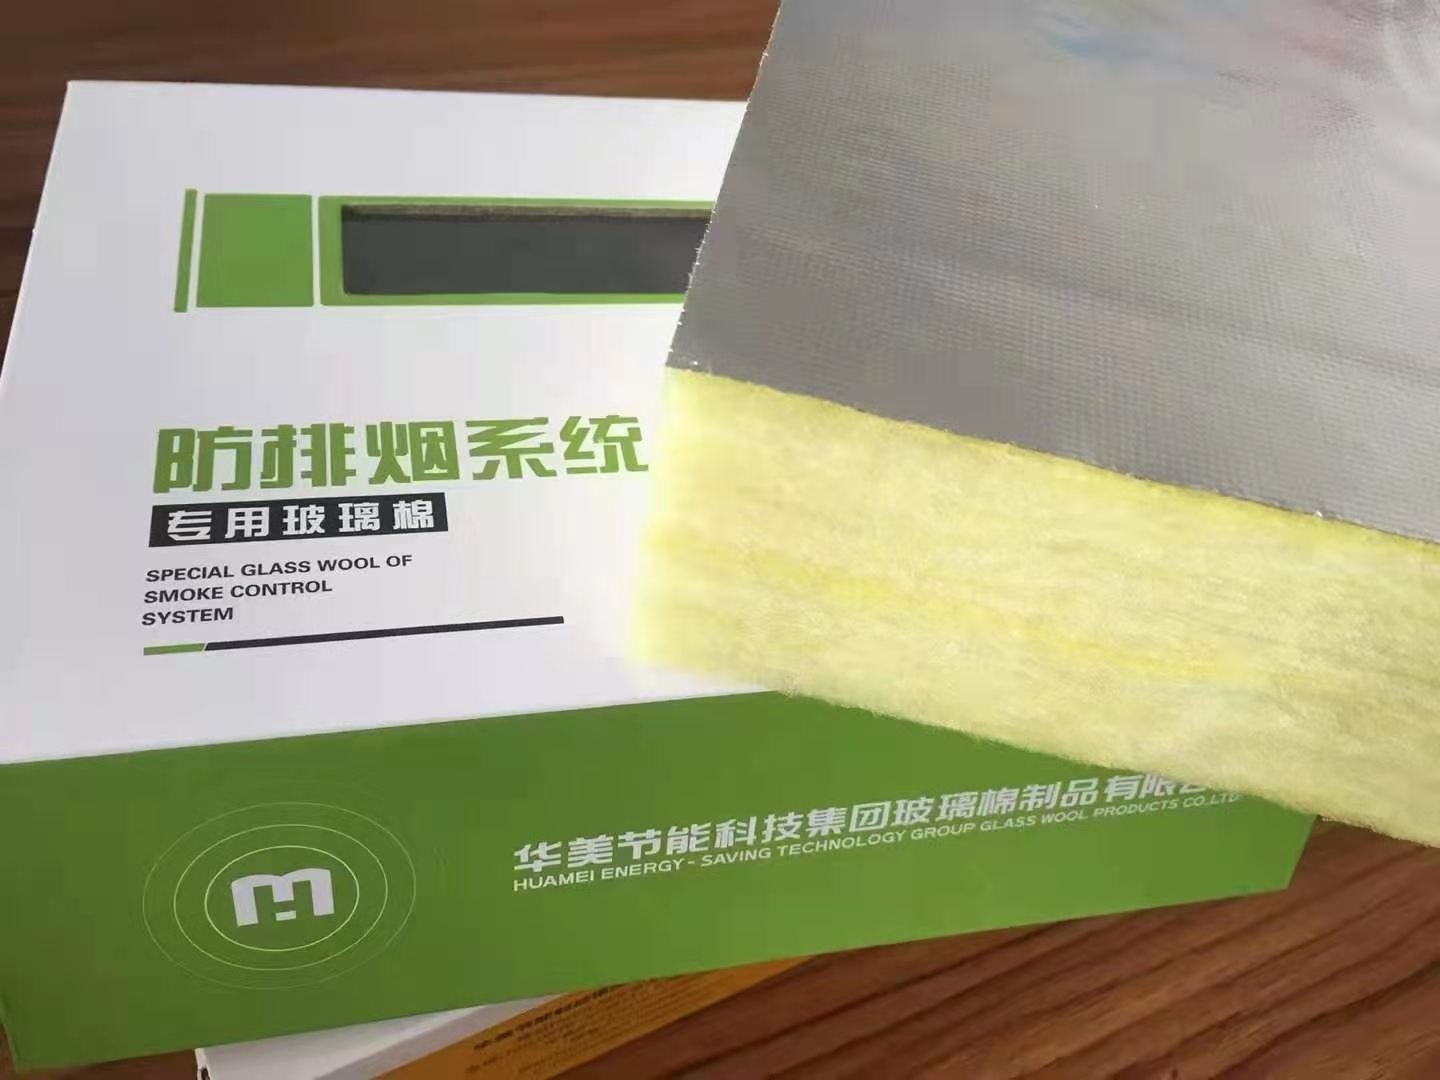 贵州华美64K玻璃棉华美金属管道绝热软包裹材料耐火极限1小时